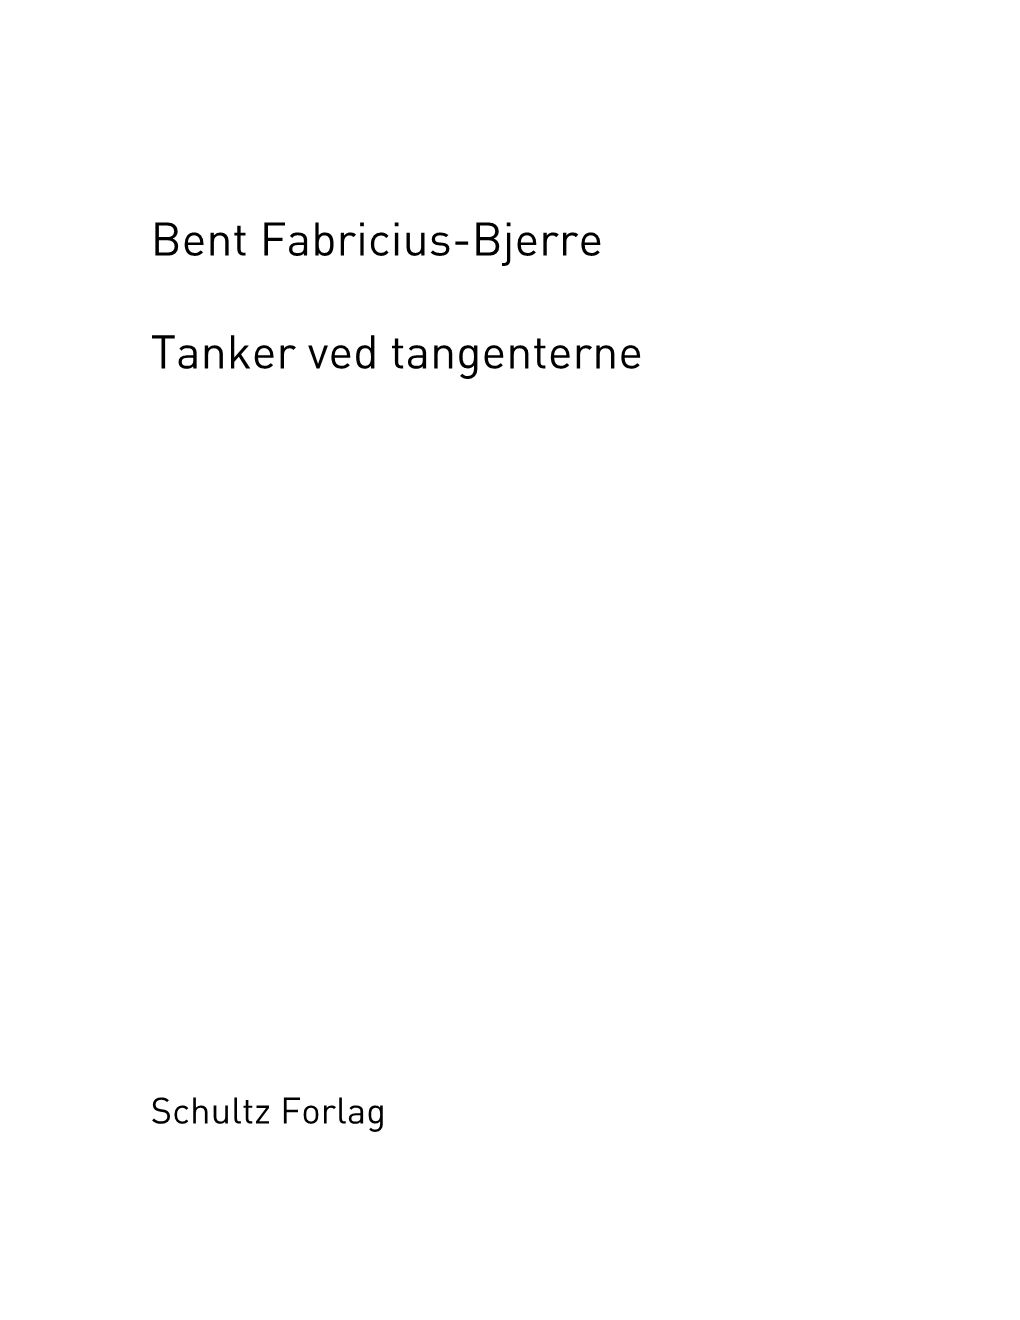 Bent Fabricius-Bjerre Tanker Ved Tangenterne